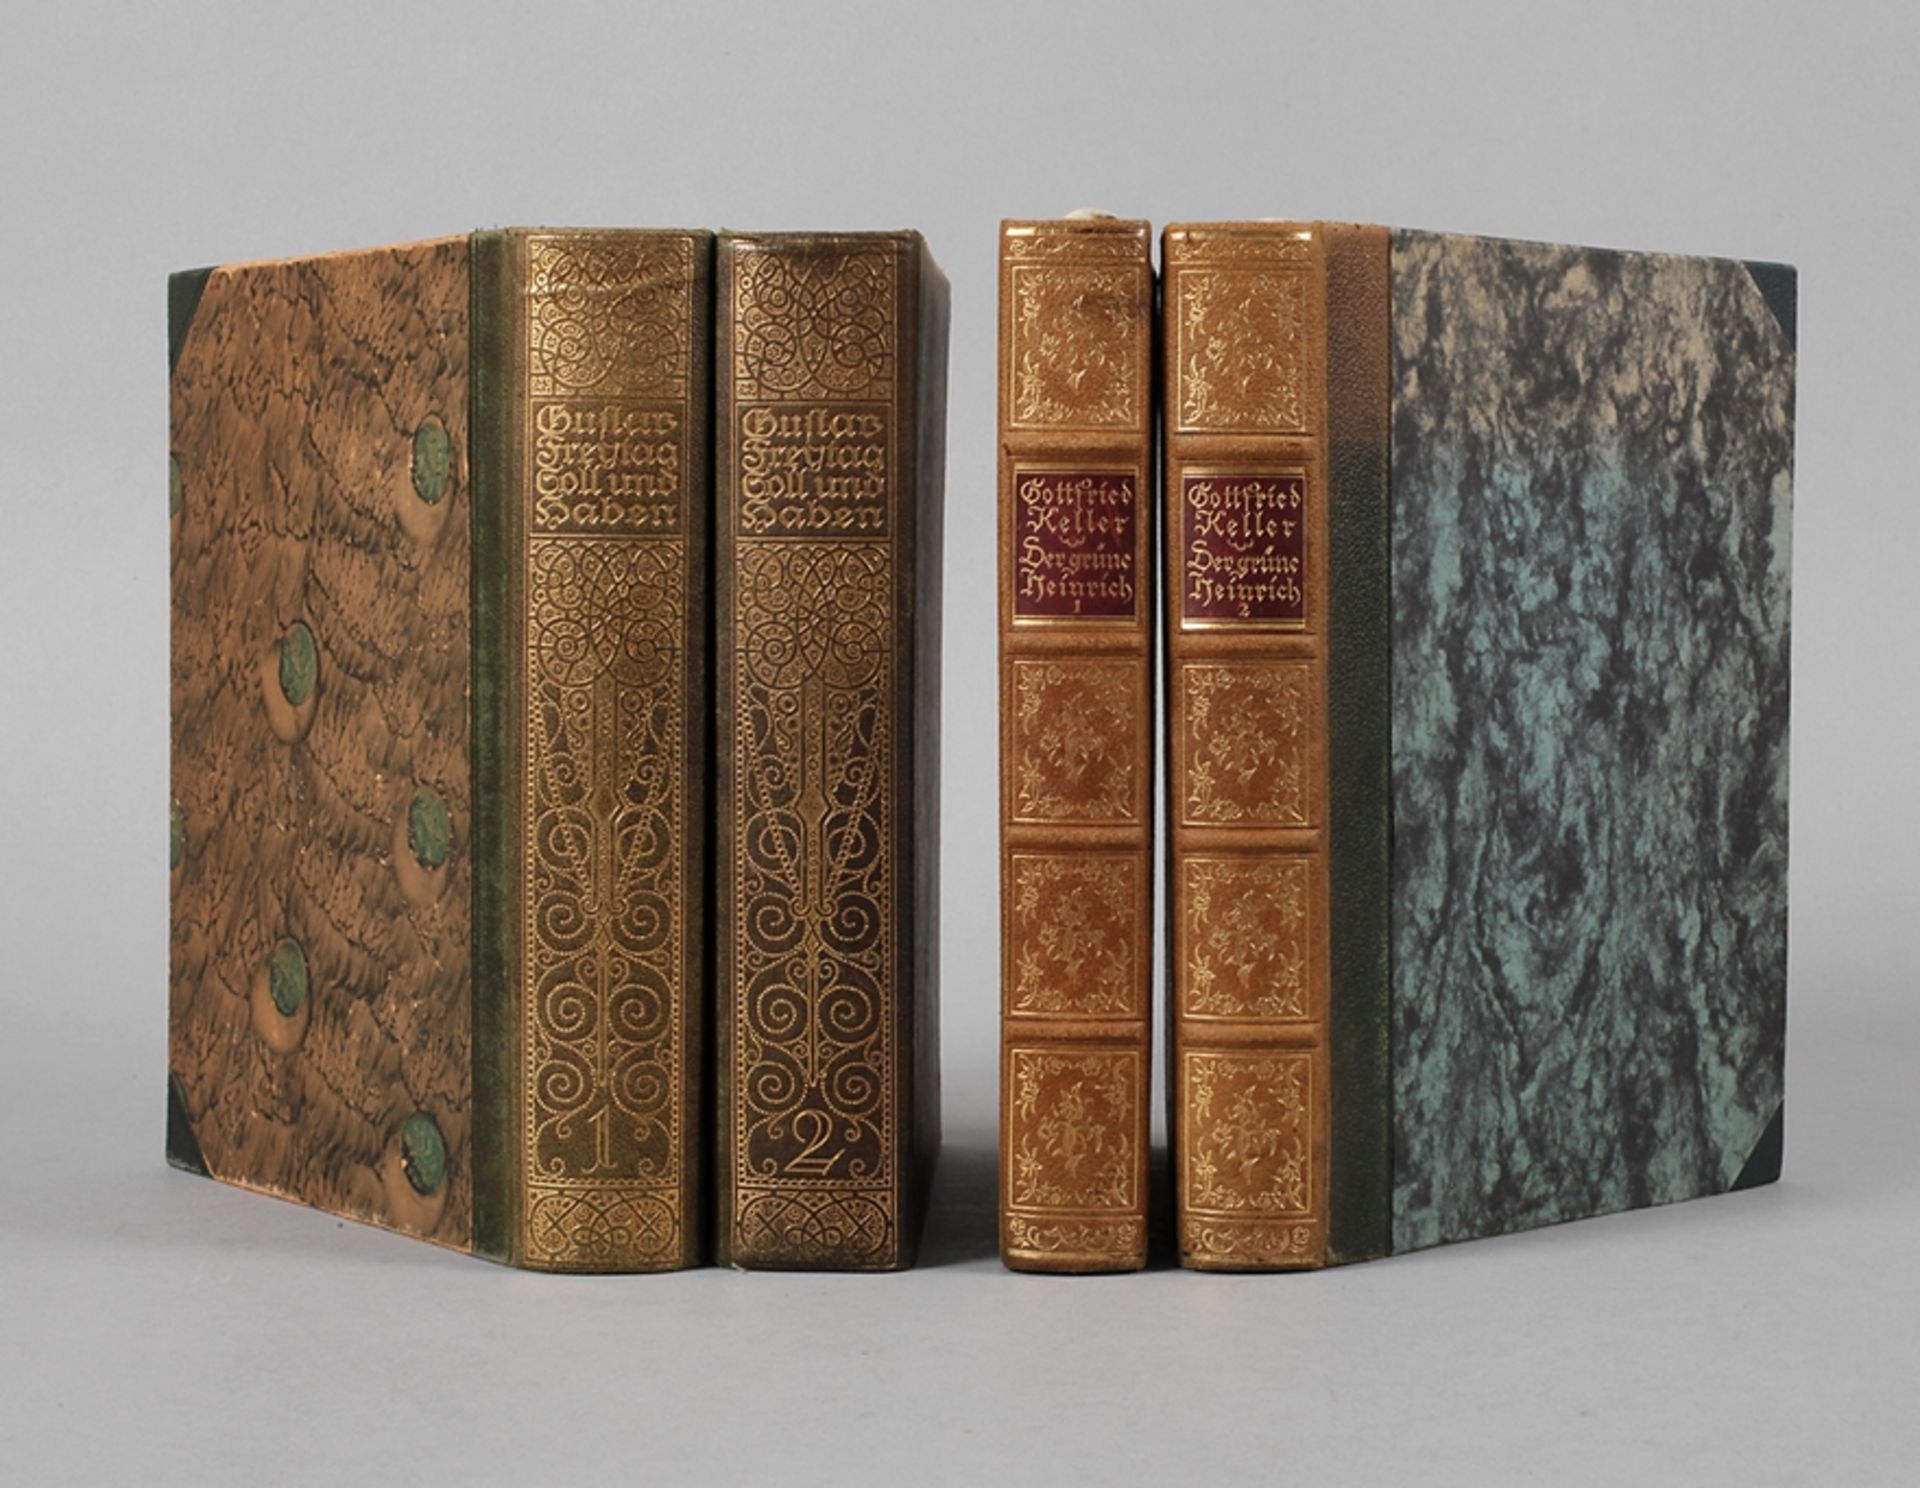 Zwei Paar Bände mit Illustrationen von Otto H. EngelGottfried Keller, Der grüne Heinrich, 2 Bde.,